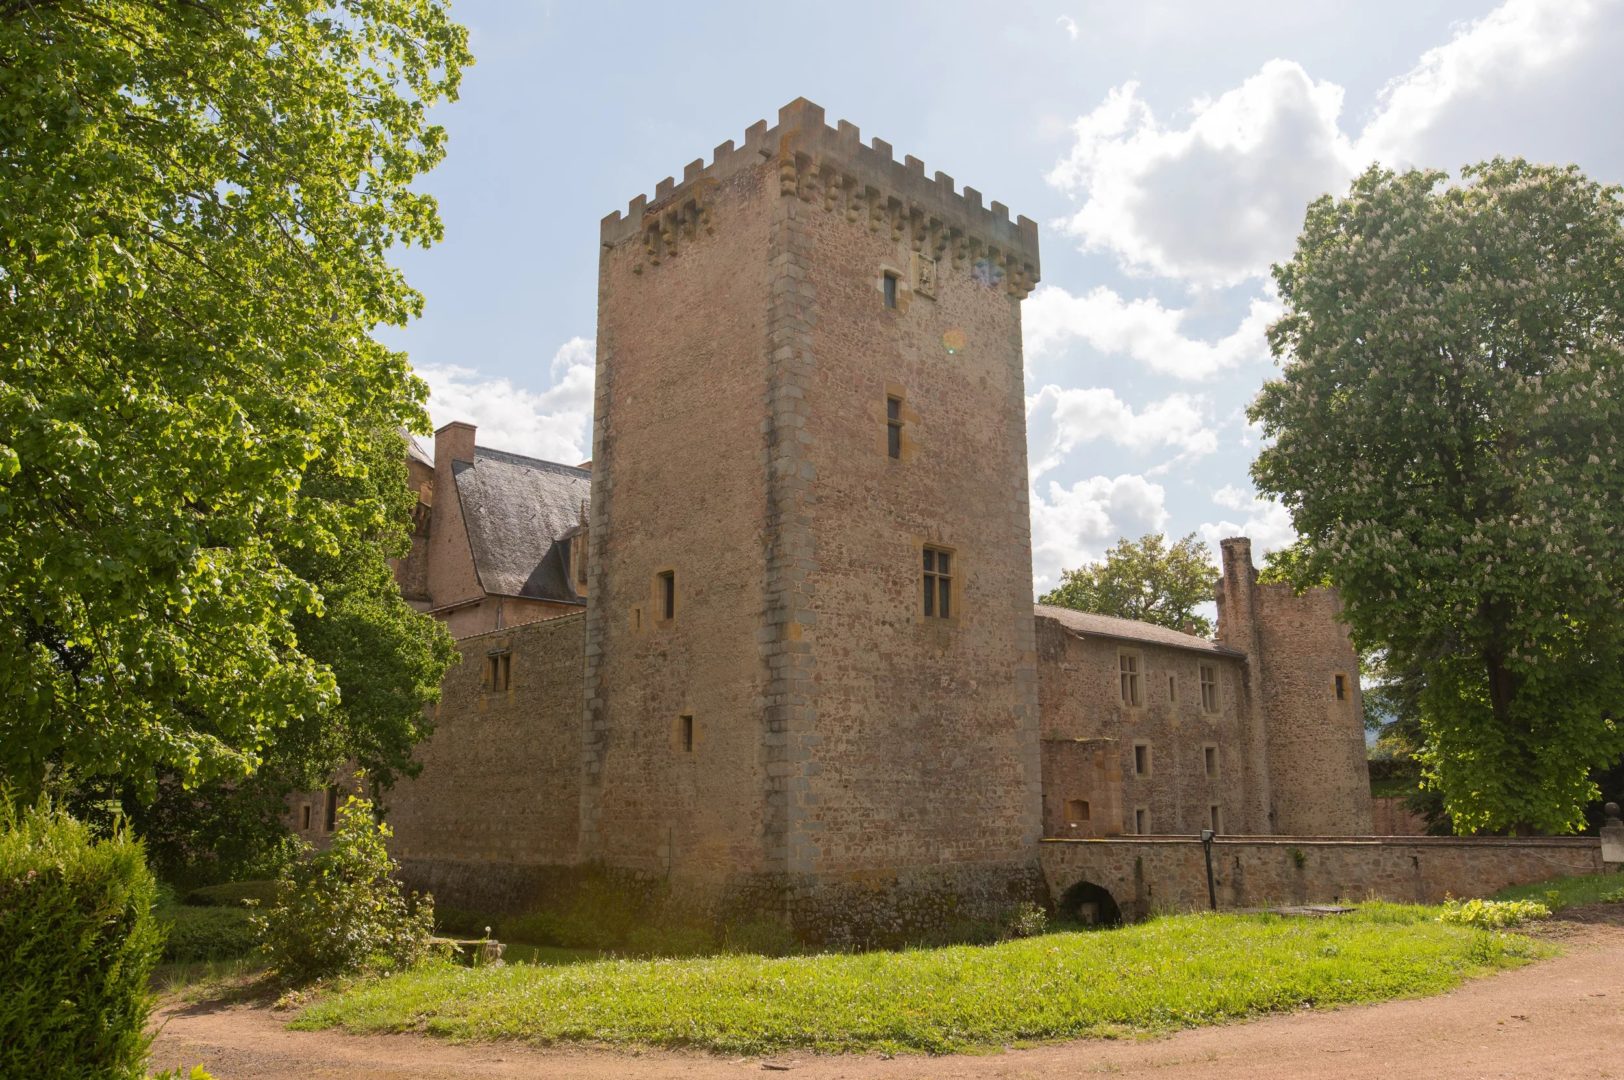 Vente Château / Manoir 1338m² 17 Pièces à Roanne (42300) - Groupe Mercure